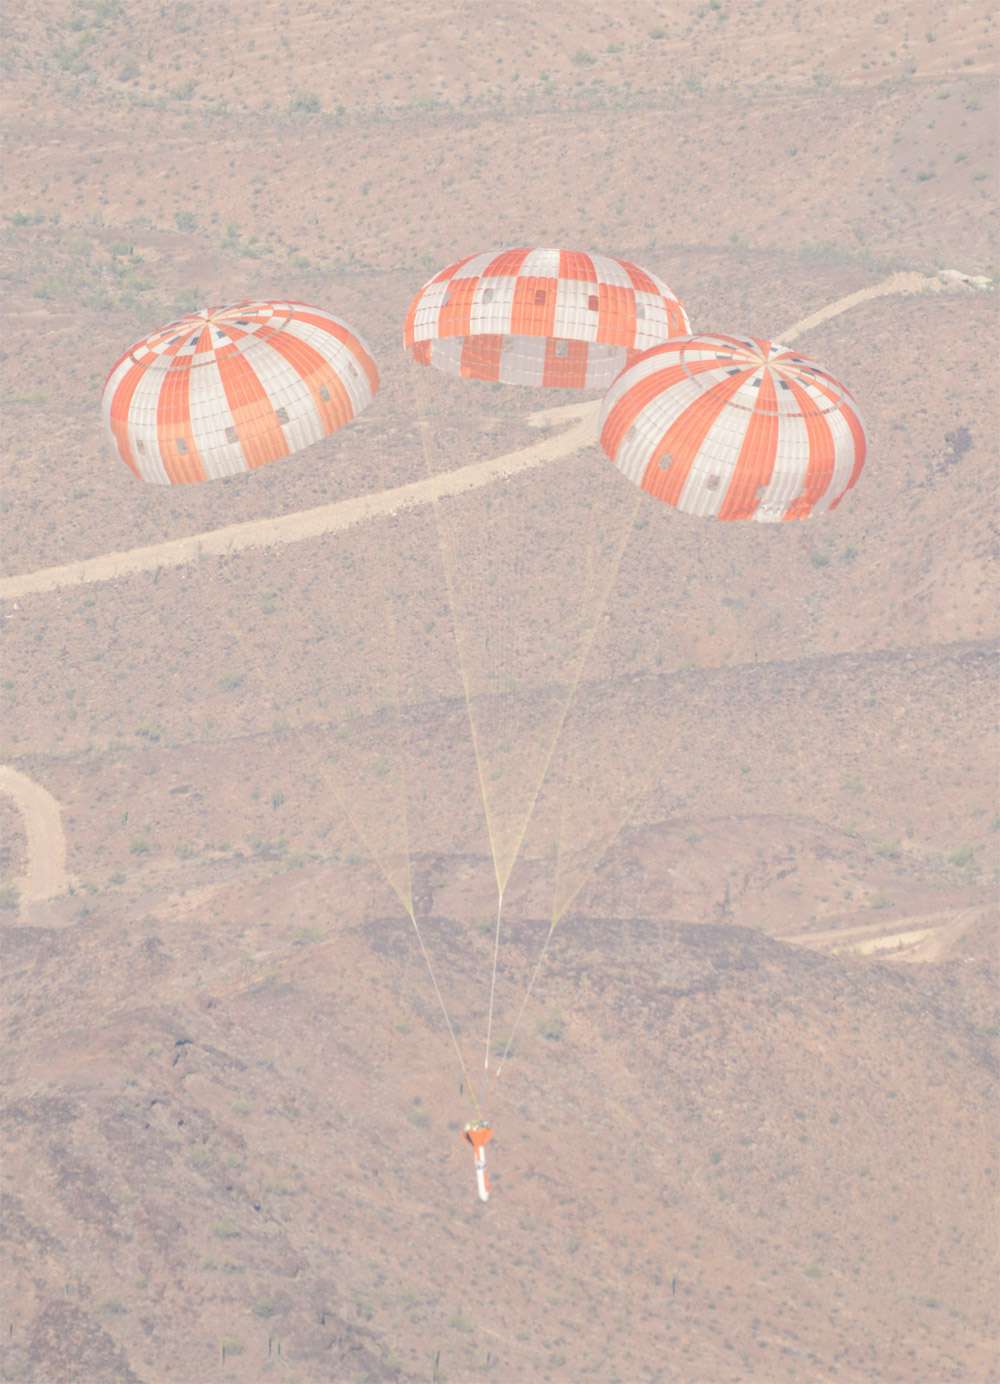 Pour cet essai, la Nasa a utilisé une sorte d’engin en forme de flèche pour atteindre la vitesse de rentrée atmosphérique. L’essai a eu lieu en Arizona, au-dessus de sites de l’armée américaine à Yuma. L’engin a été largué d’un avion Hercules C-130 à une altitude d’environ 7.600 mètres. © Nasa